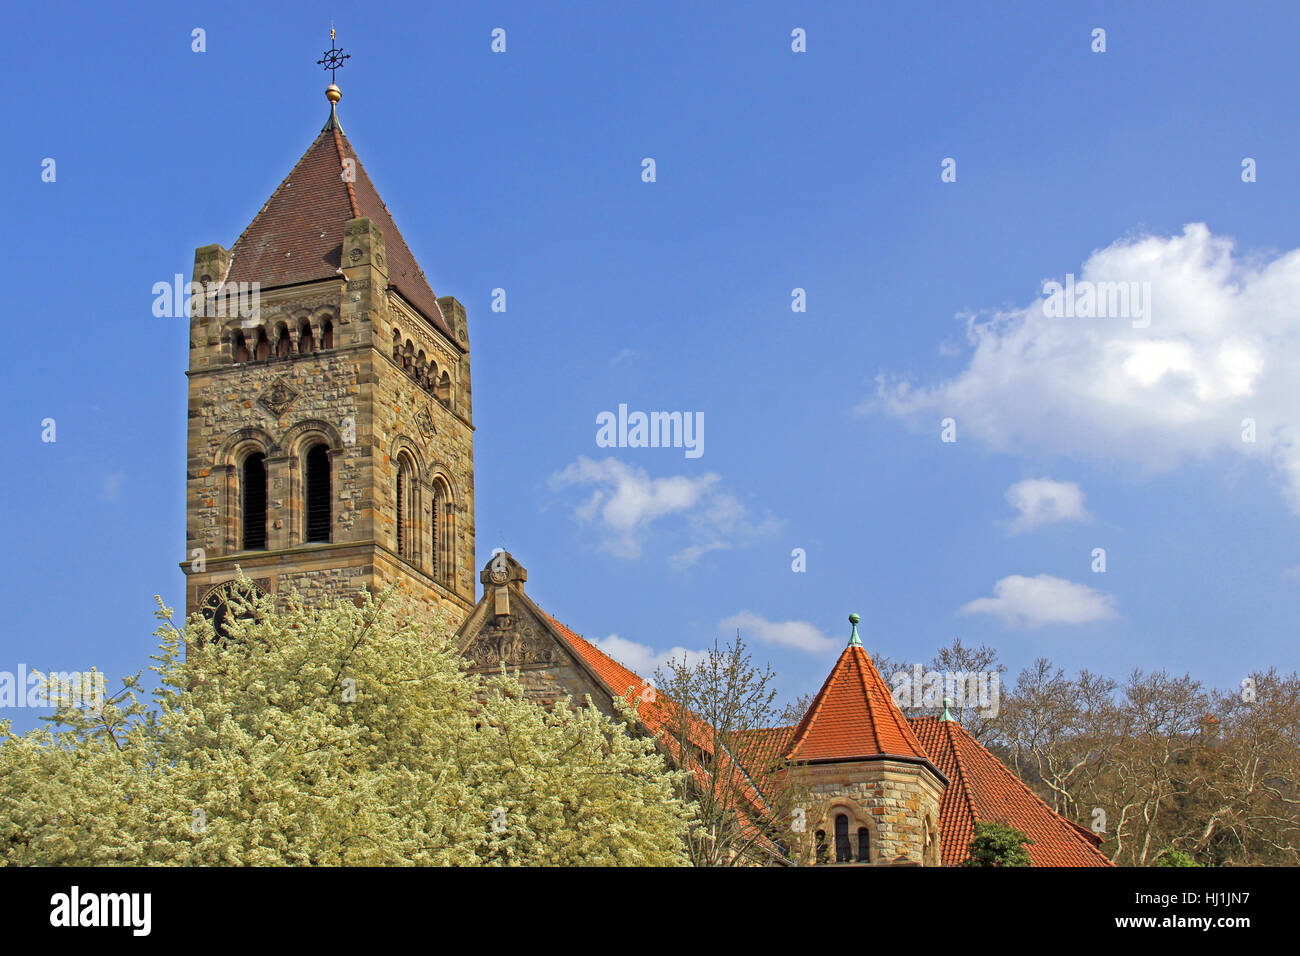 La chiesa, Steeple, parrocchiale evangelica, peterskirche, Torre, chiesa, fiorisce, molla Foto Stock